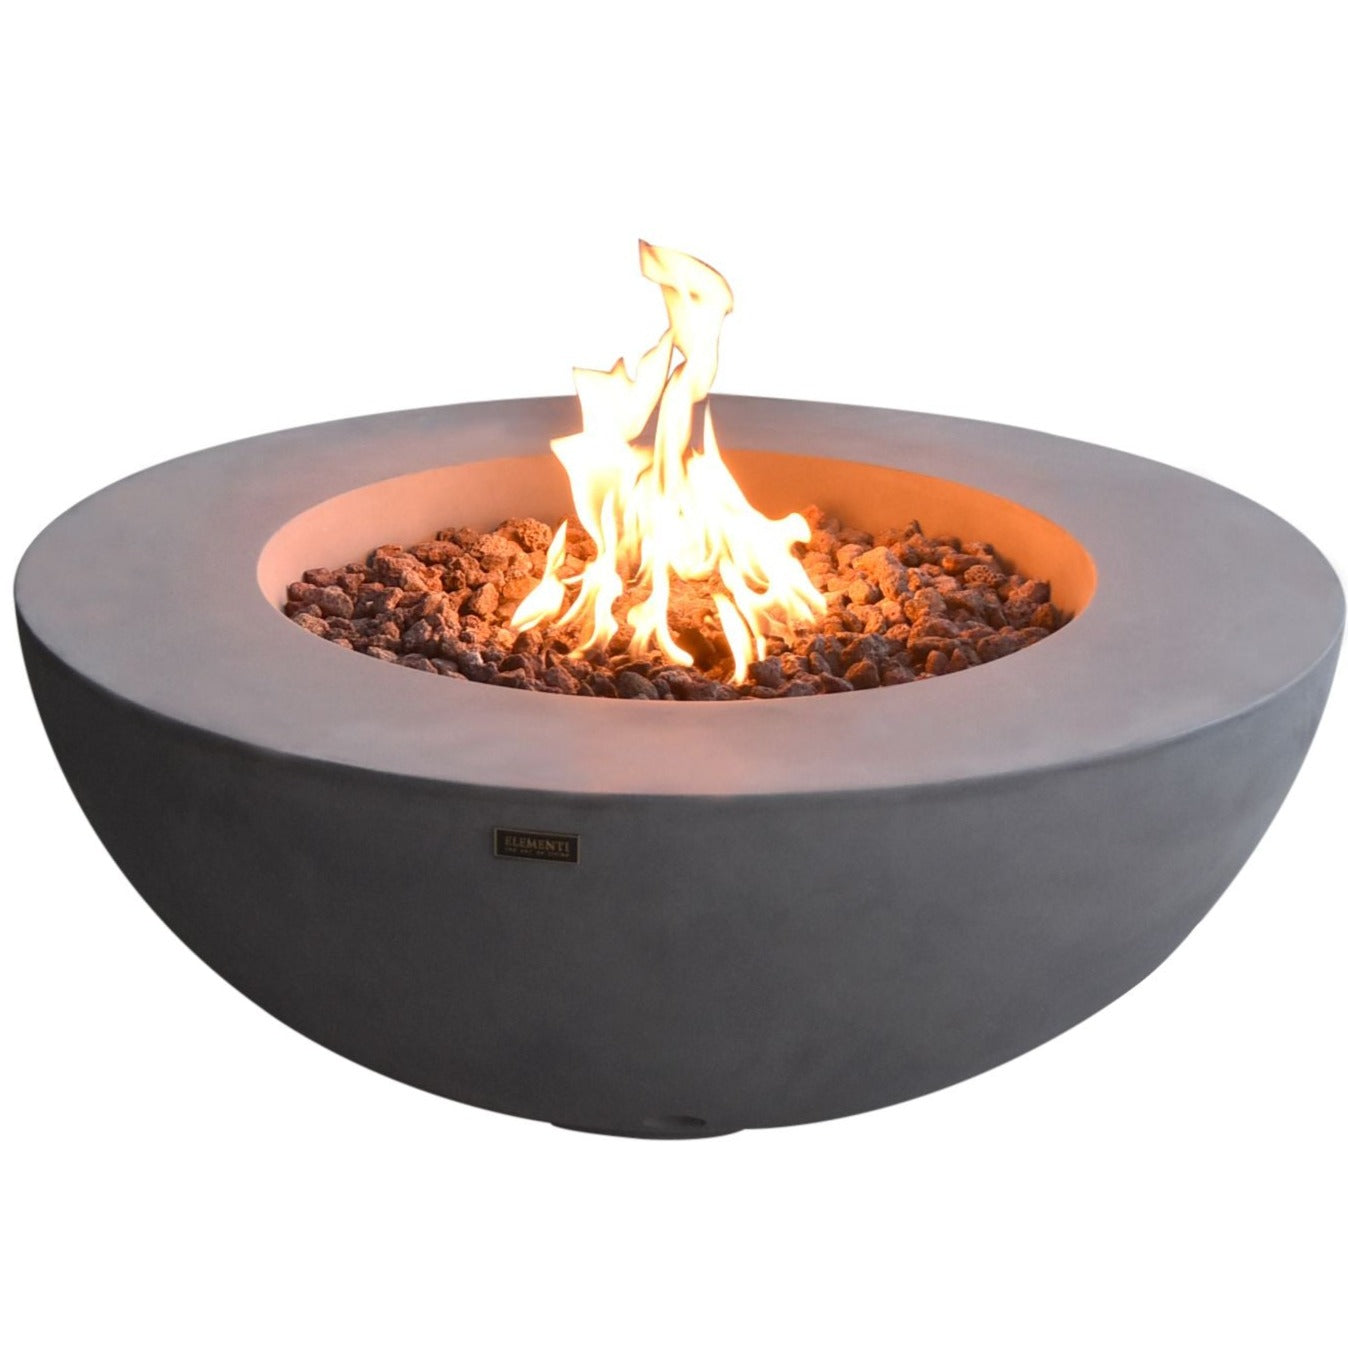 Elementi Lunar Bowl Fire Pit Table - Light Gray Lit